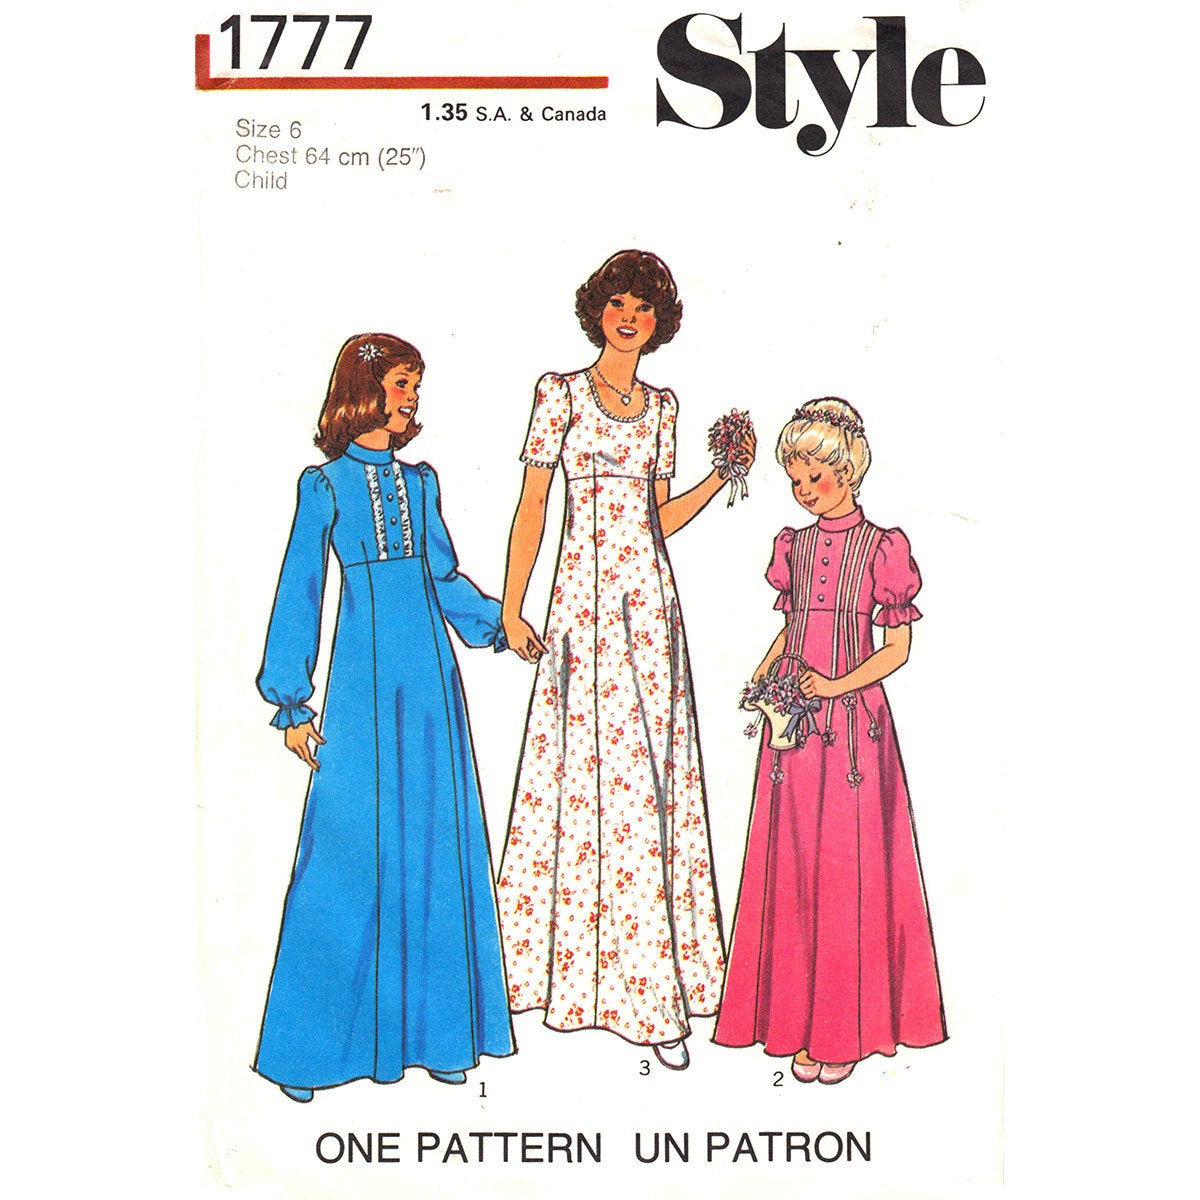 Style 1777 girls dress pattern